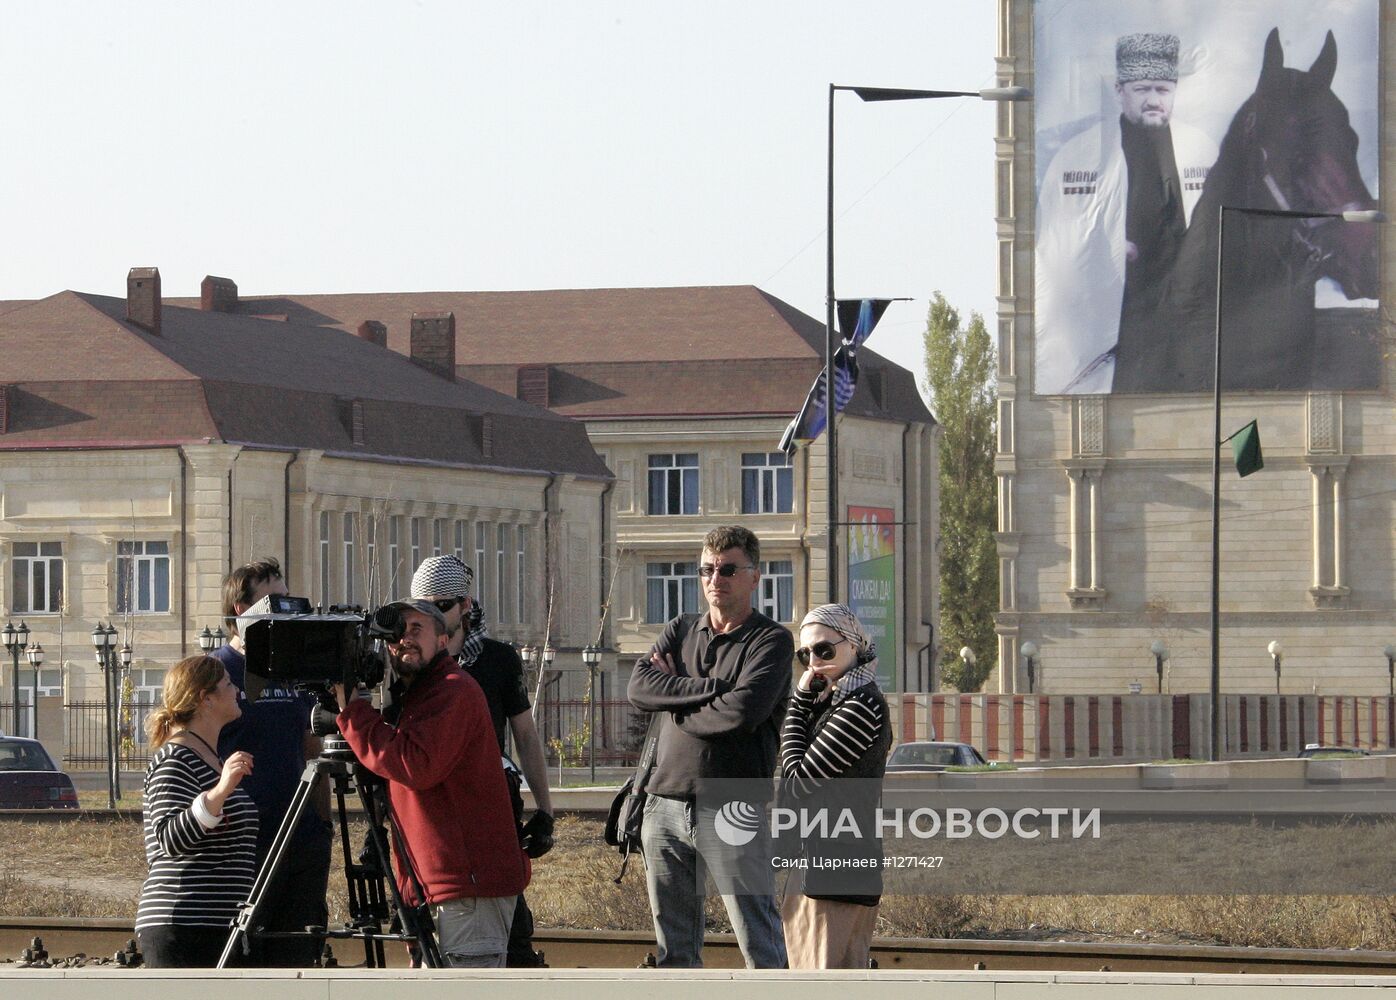 Съемки фильма Х.Эркенова "Пепел" начались в Чечне